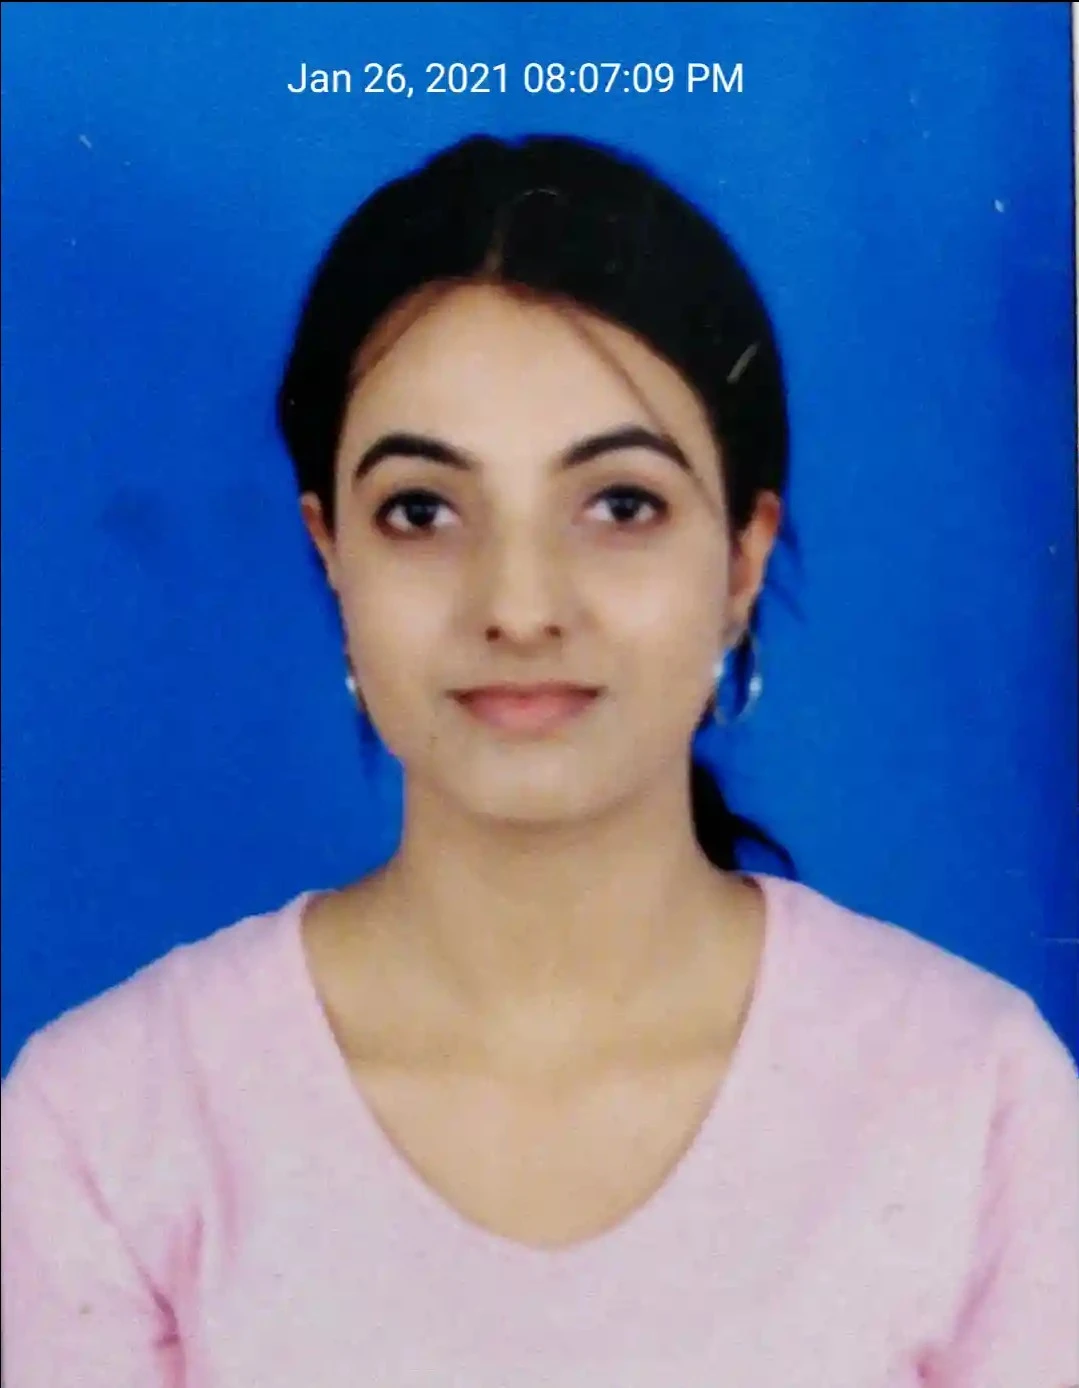 The avatar image for Shivangi Dubey